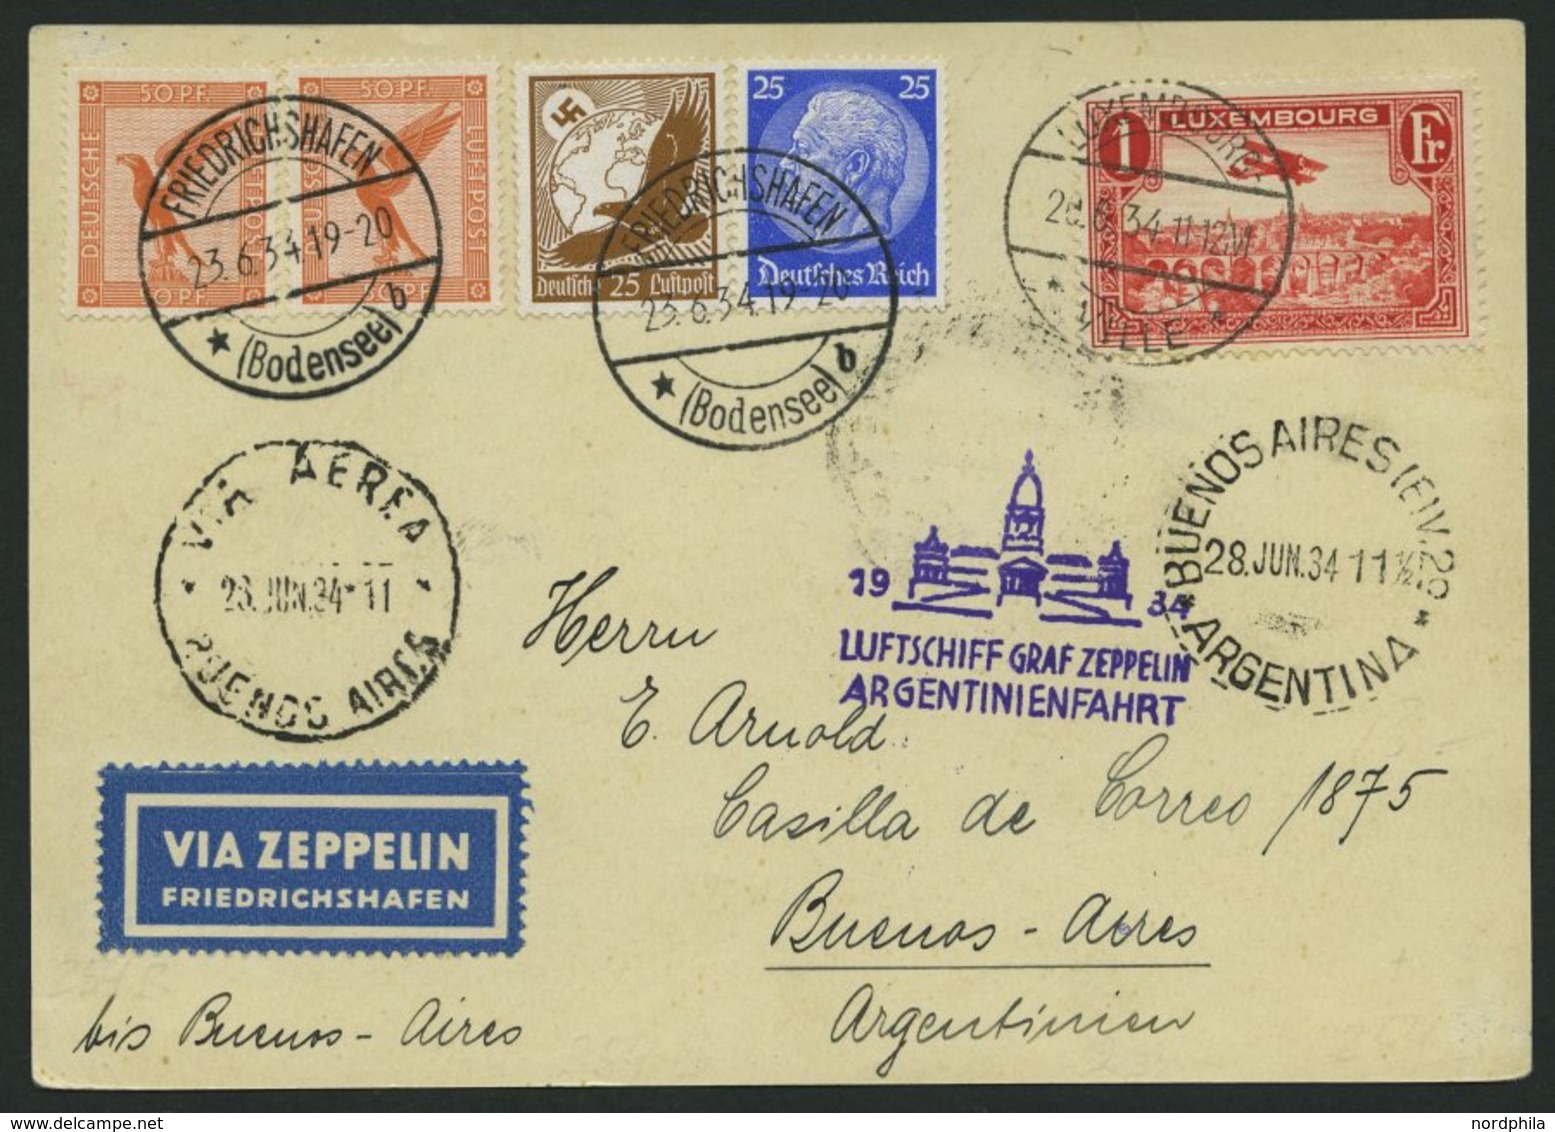 ZULEITUNGSPOST 254 BRIEF, Luxemburg: 1934, Argentinienfahrt, Prachtkarte - Zeppelins